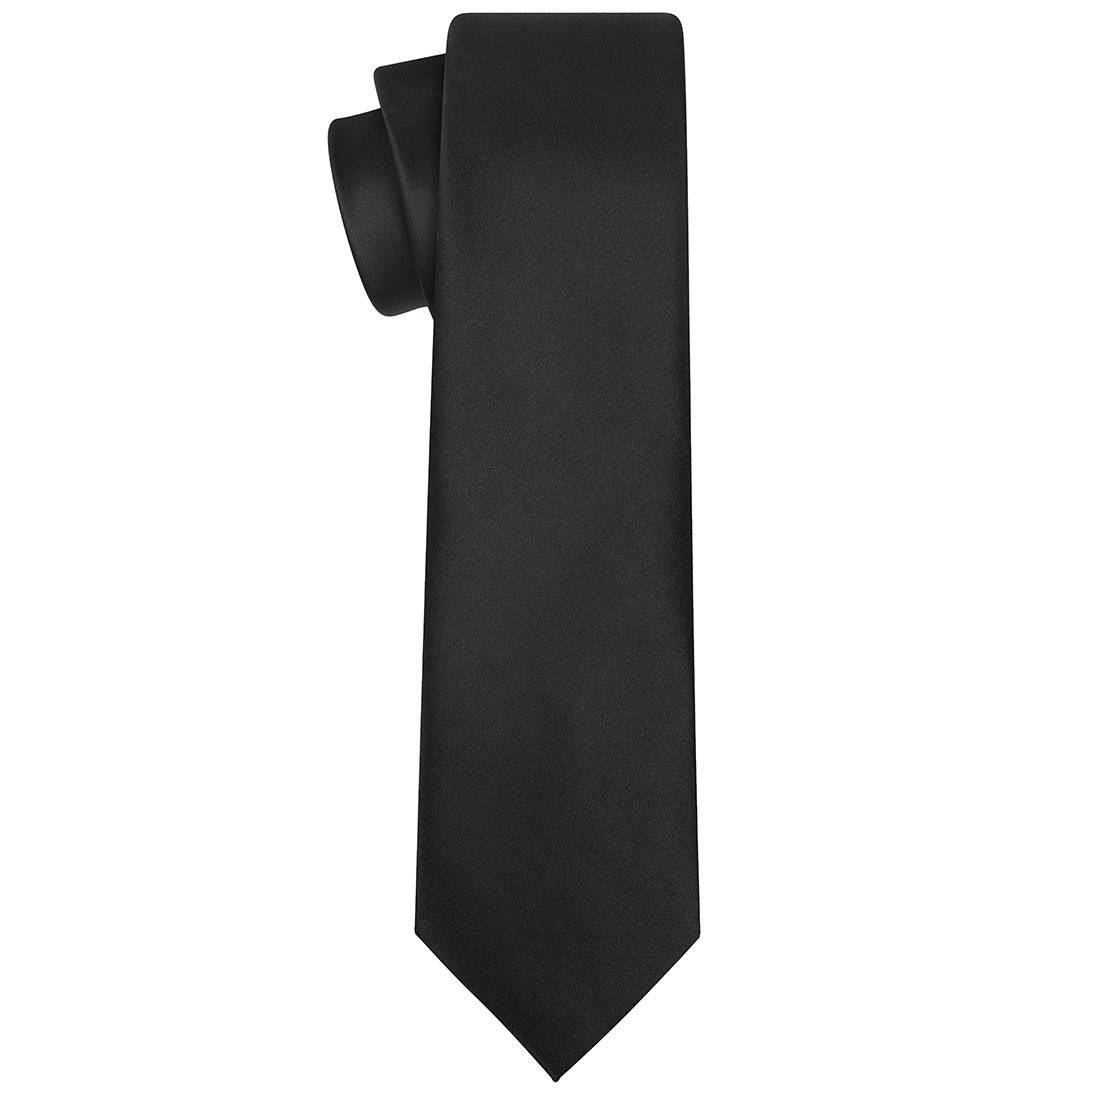 Black Silk Tie - Tie, bowtie, pocket square  | Kissties